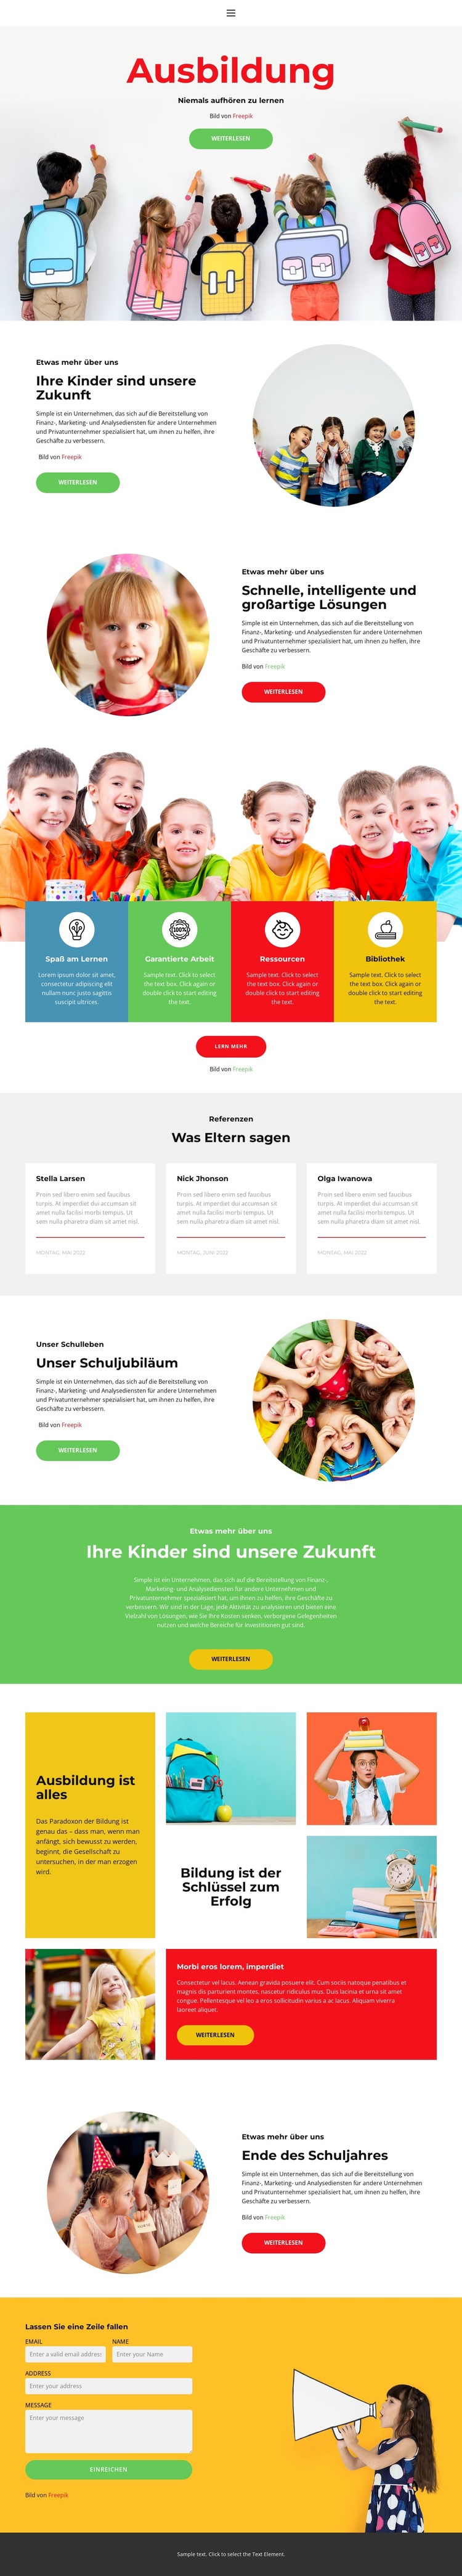 Unser Schulleben Website-Vorlage